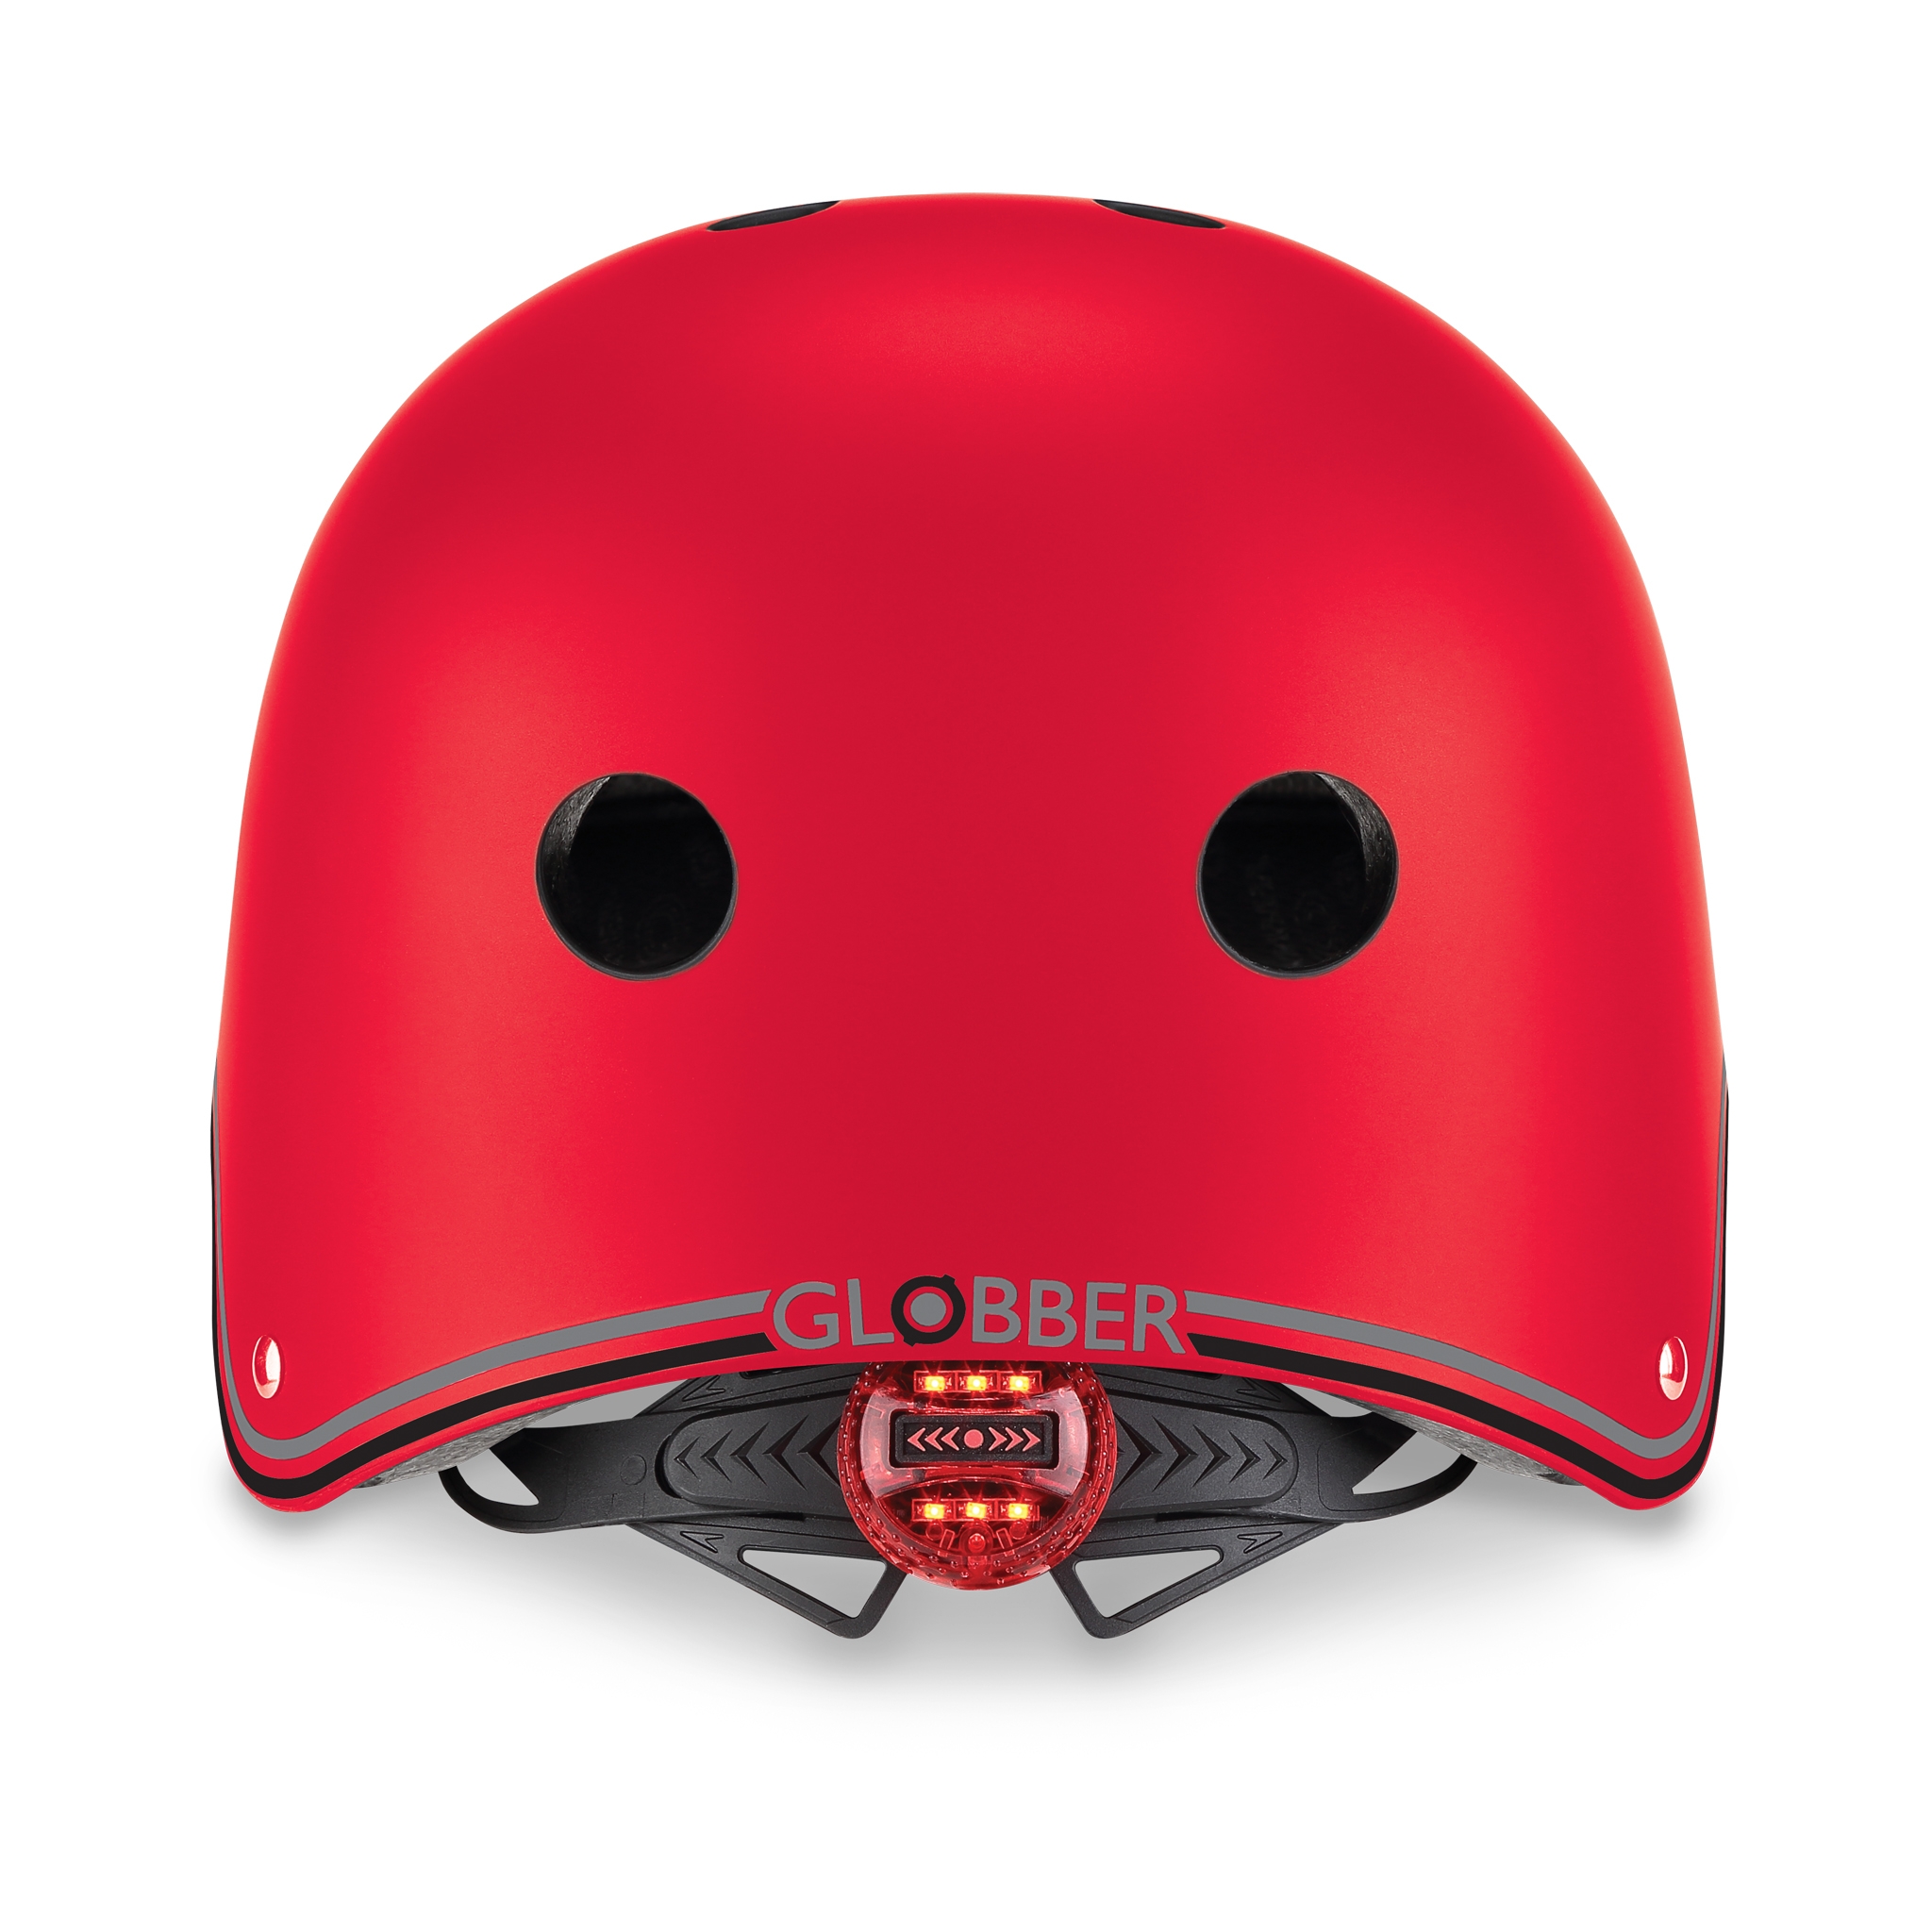 PRIMO-helmets-scooter-helmets-for-kids-with-LED-lights-safe-helmet-for-kids-new-red 2